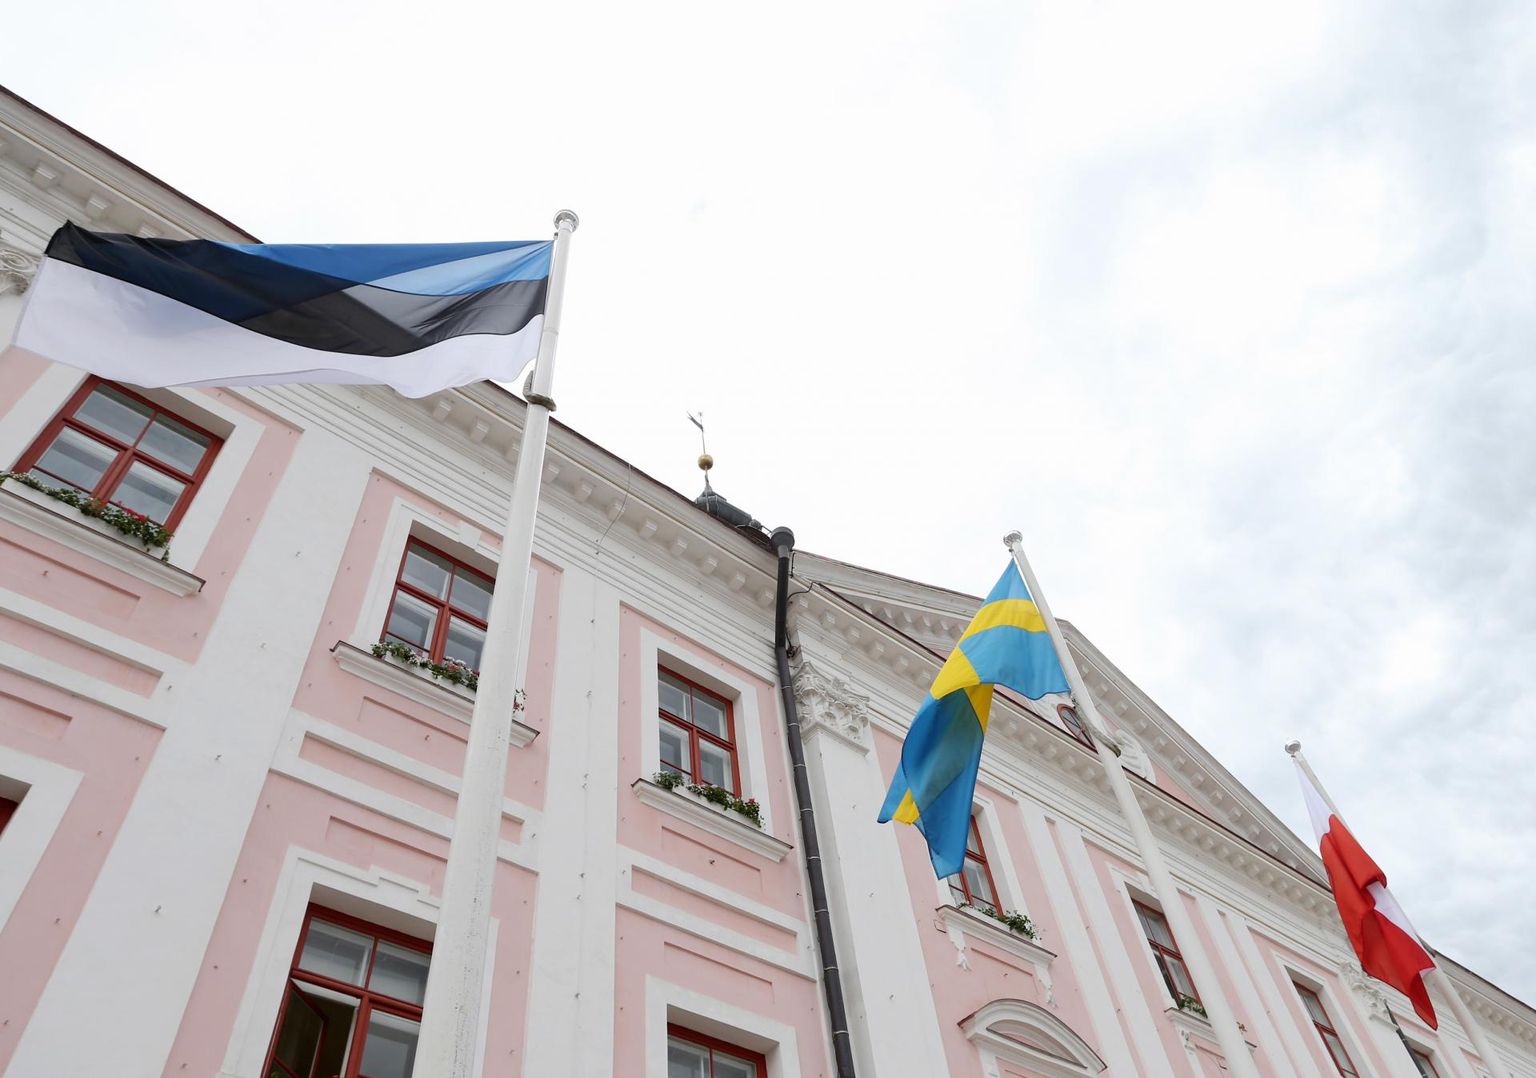 Rootsil on Eestis ajaloolised huvid ja suhted. Tartu ja Uppsala tähistamas koostöösuhete 30. aastapäeva. Selle tähistamiseks oli Tartu raekoja ette heisatud Rootsi lipp.
 